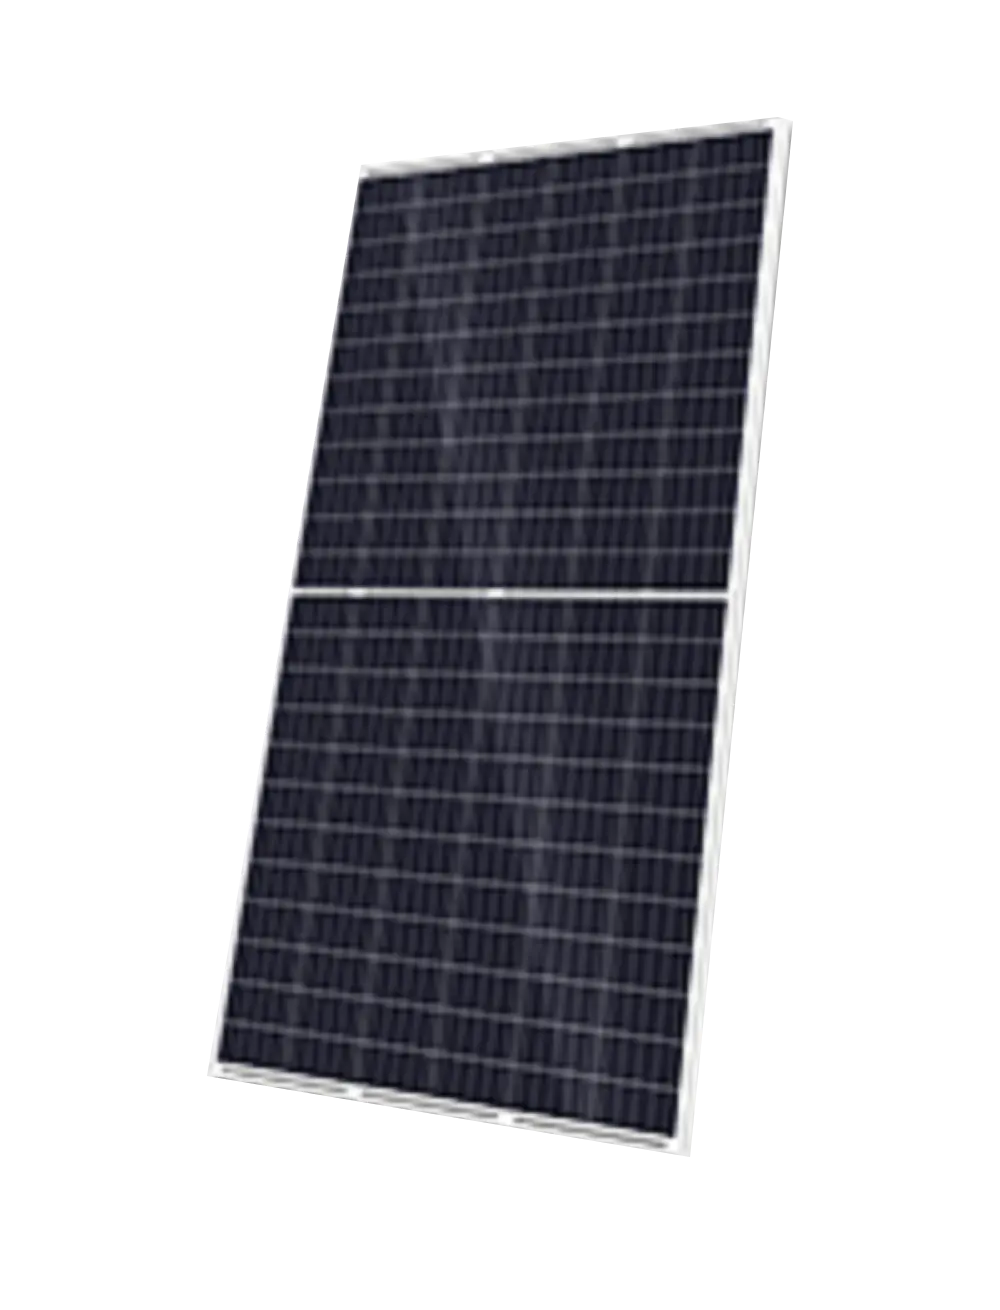 SINO GREEN Solar KuMax CS3U-345P 345W Solar Panel
